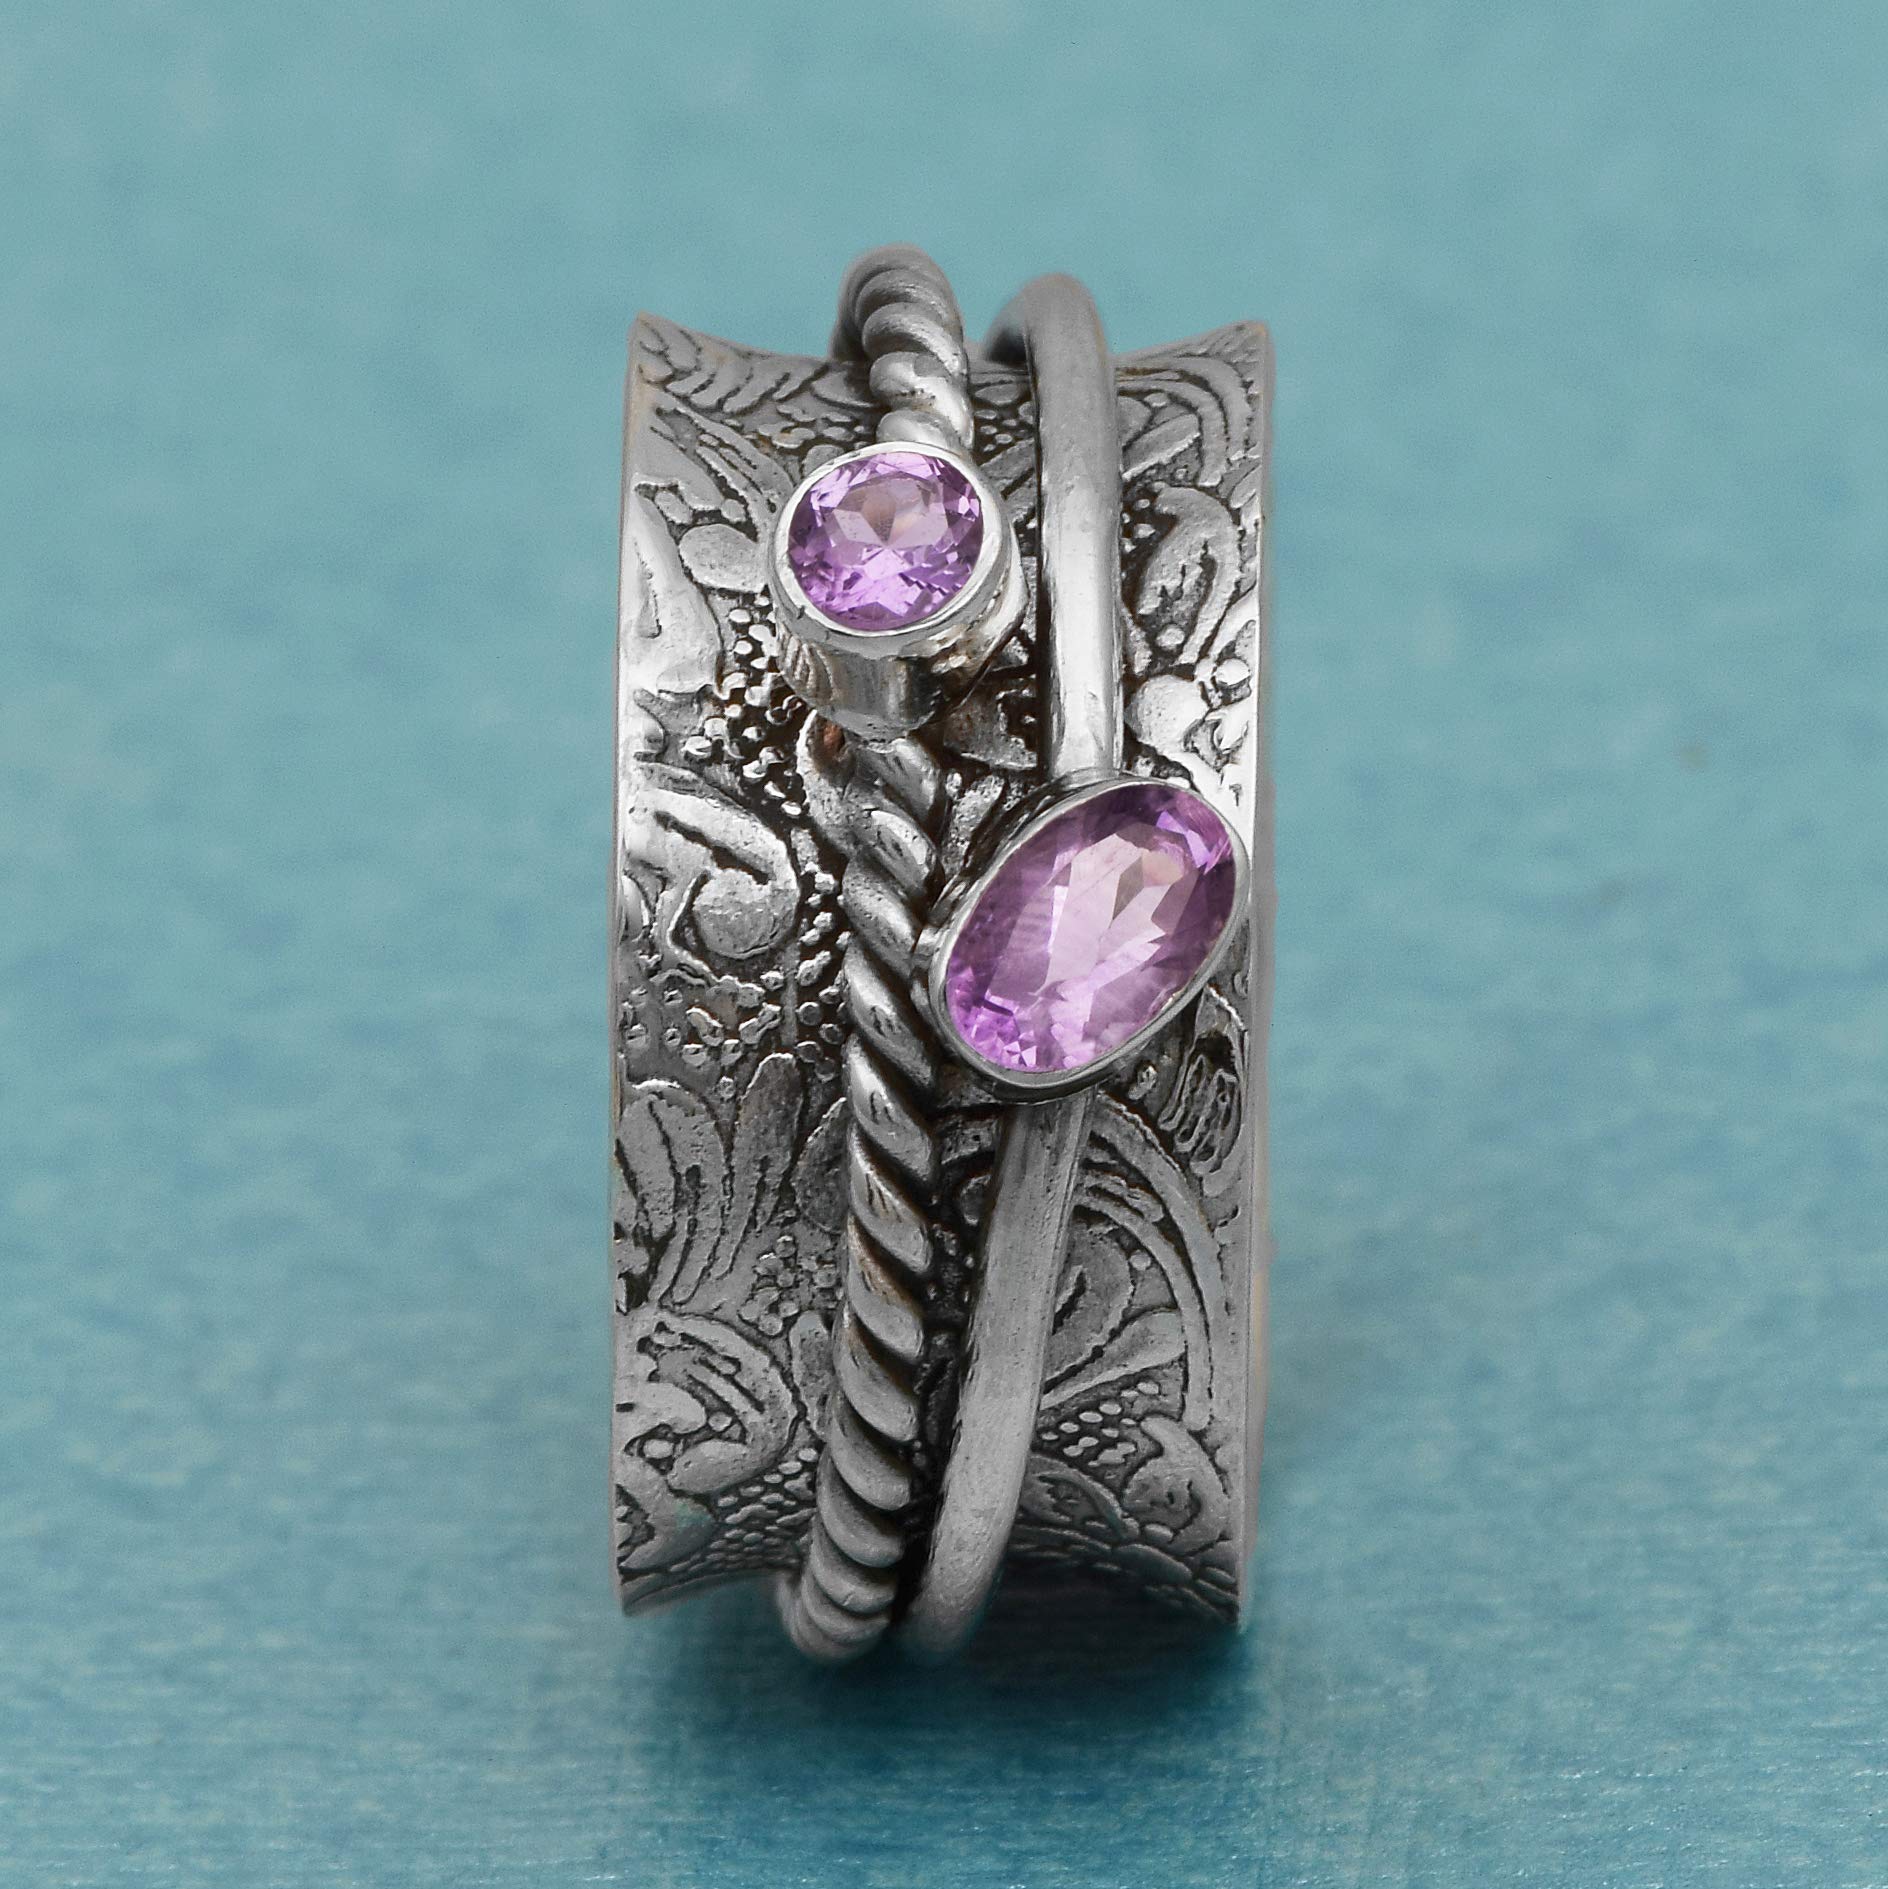 Spinner Ring|| Amethyst Gemstone Spin Band Textured Design 925 Sterling Silver Handmade Handmade Finish Meditation Fidget Ring